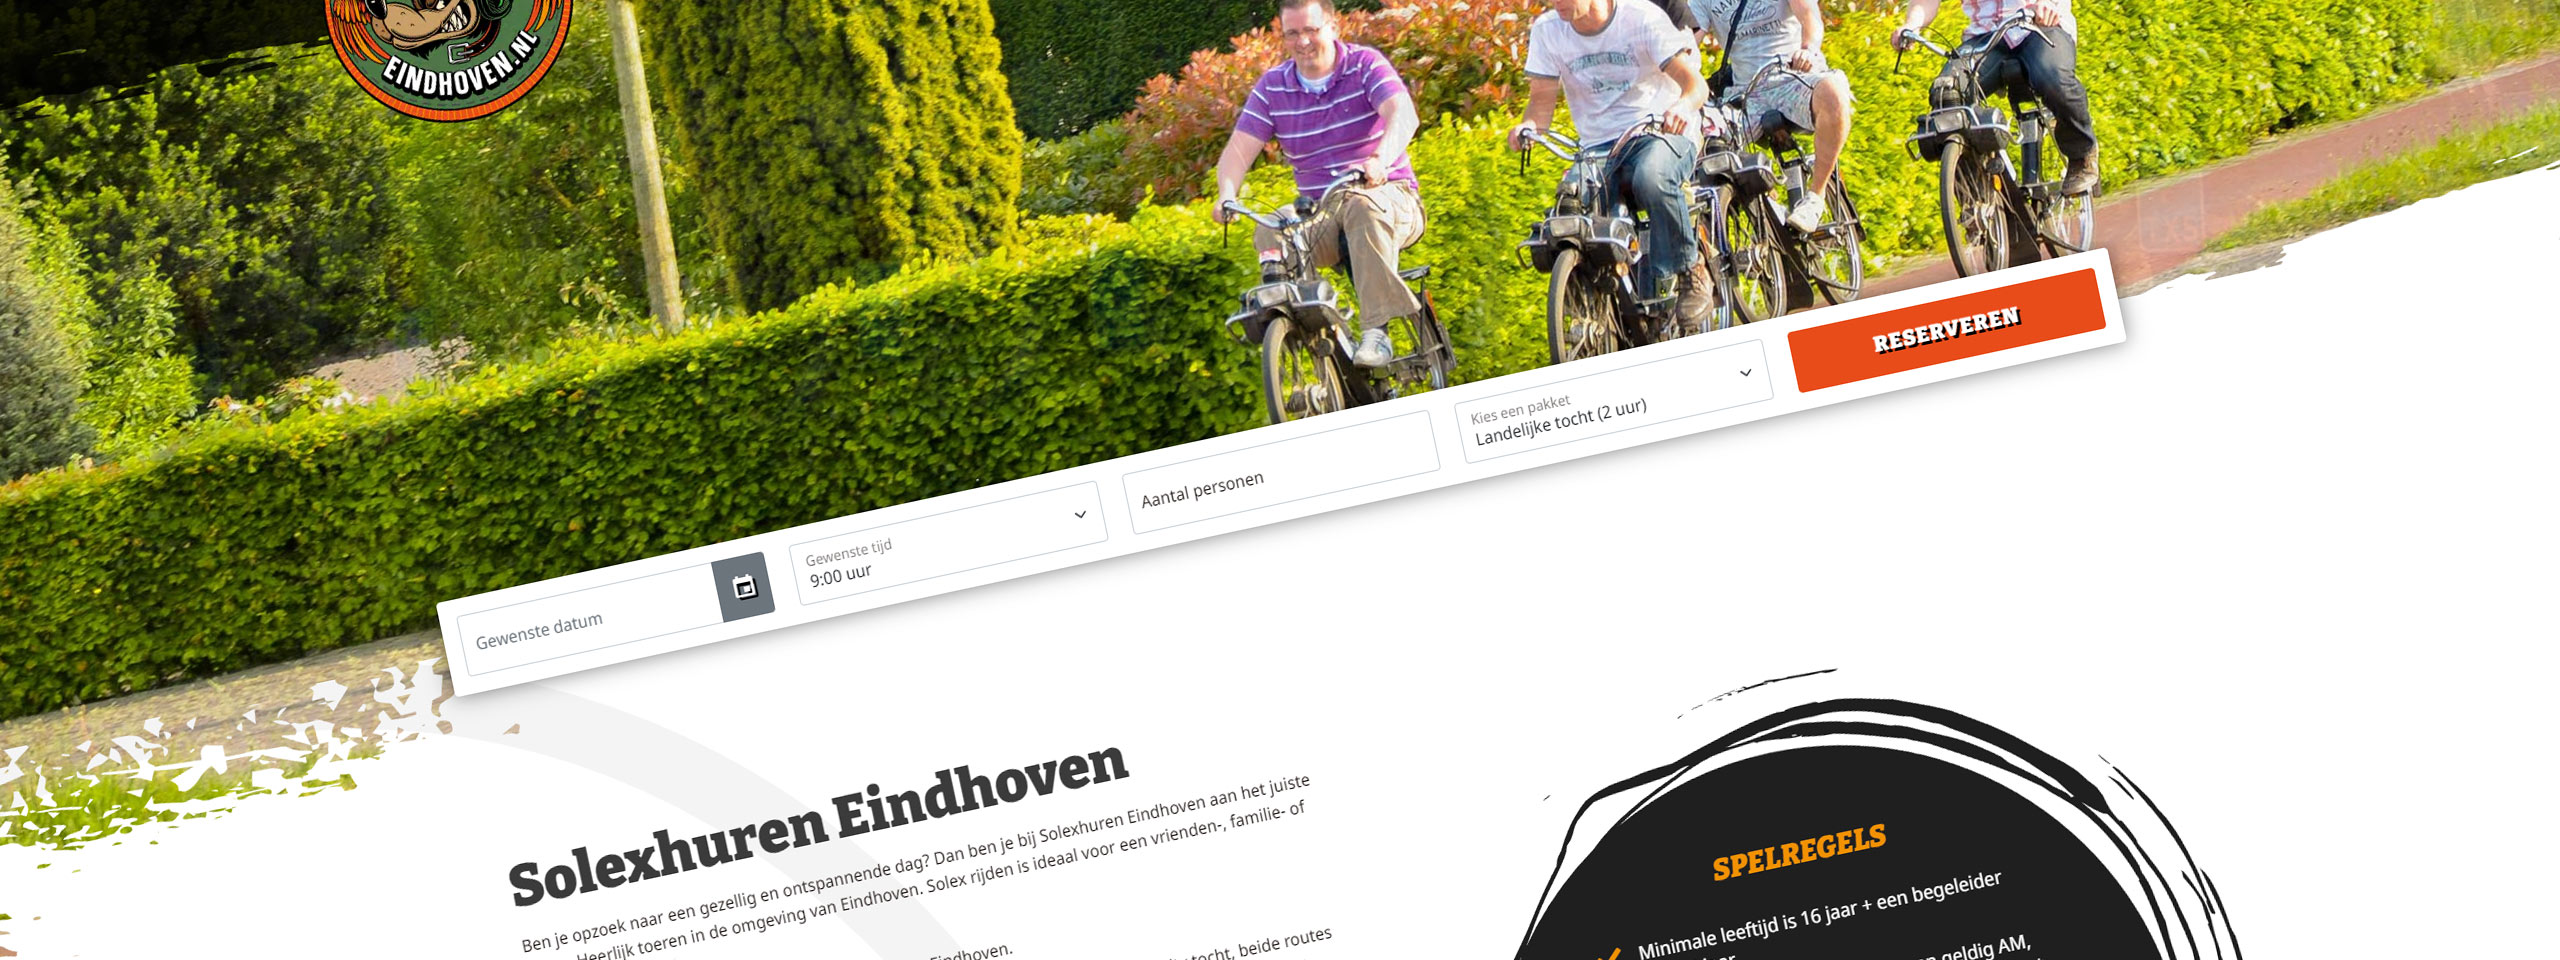 Website Solexhuren Eindhoven